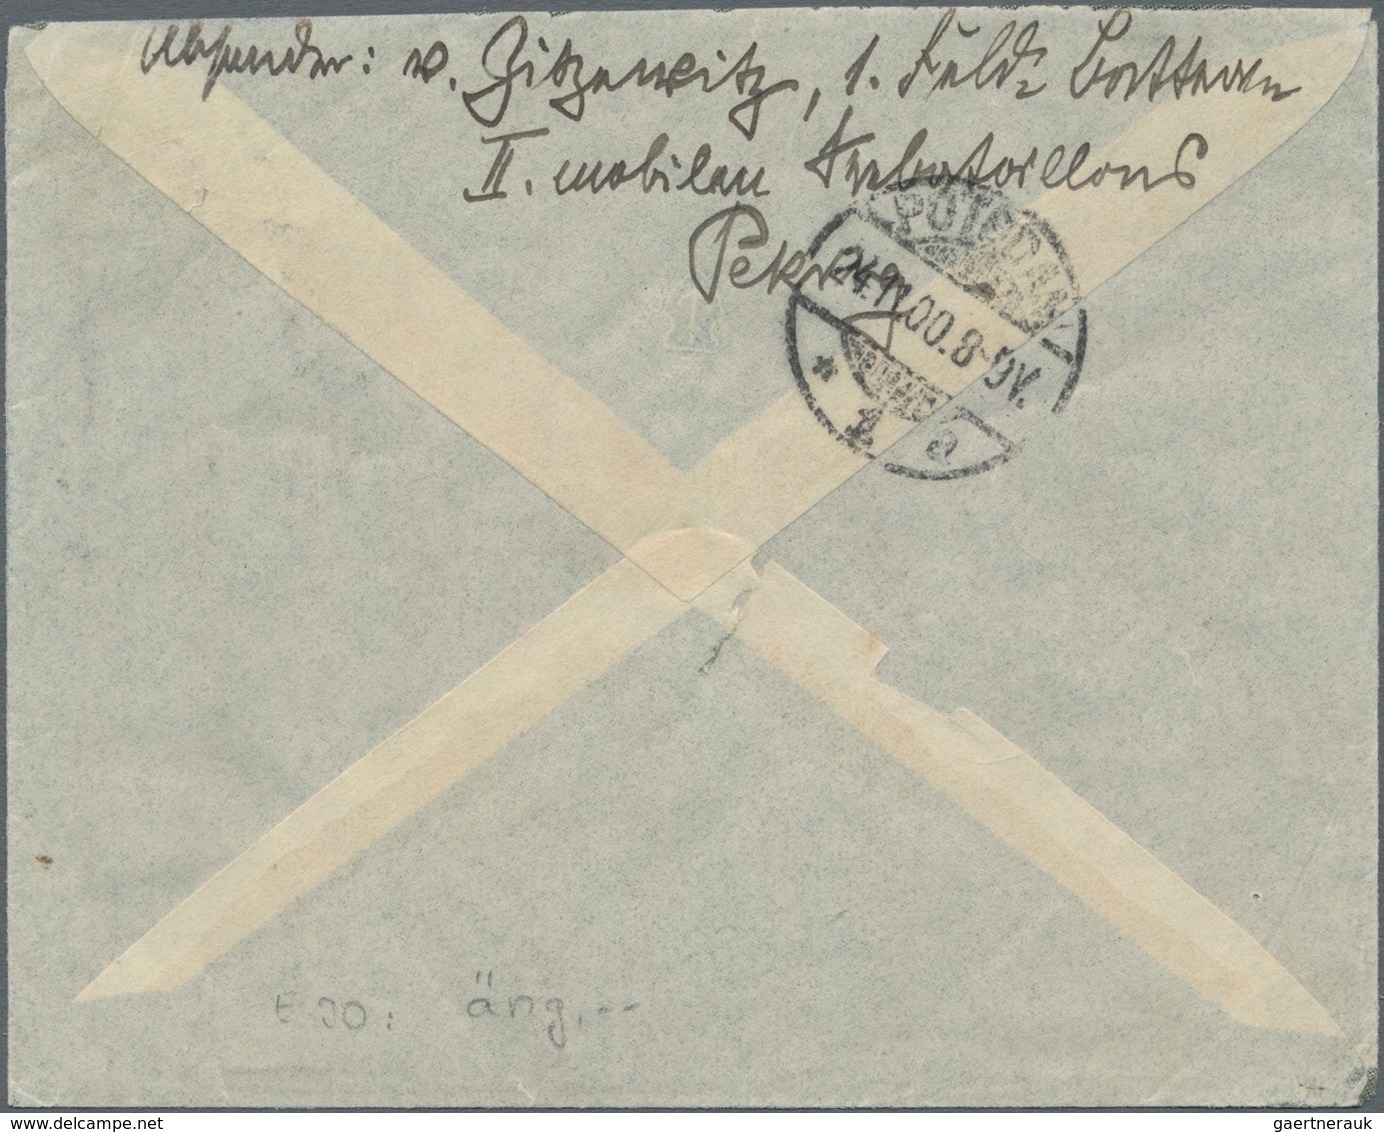 Deutsche Post In China - Stempel: 1900, Feldpostbrief Ohne Frankatur Von Peking Ohne Datum (Weichhol - China (offices)